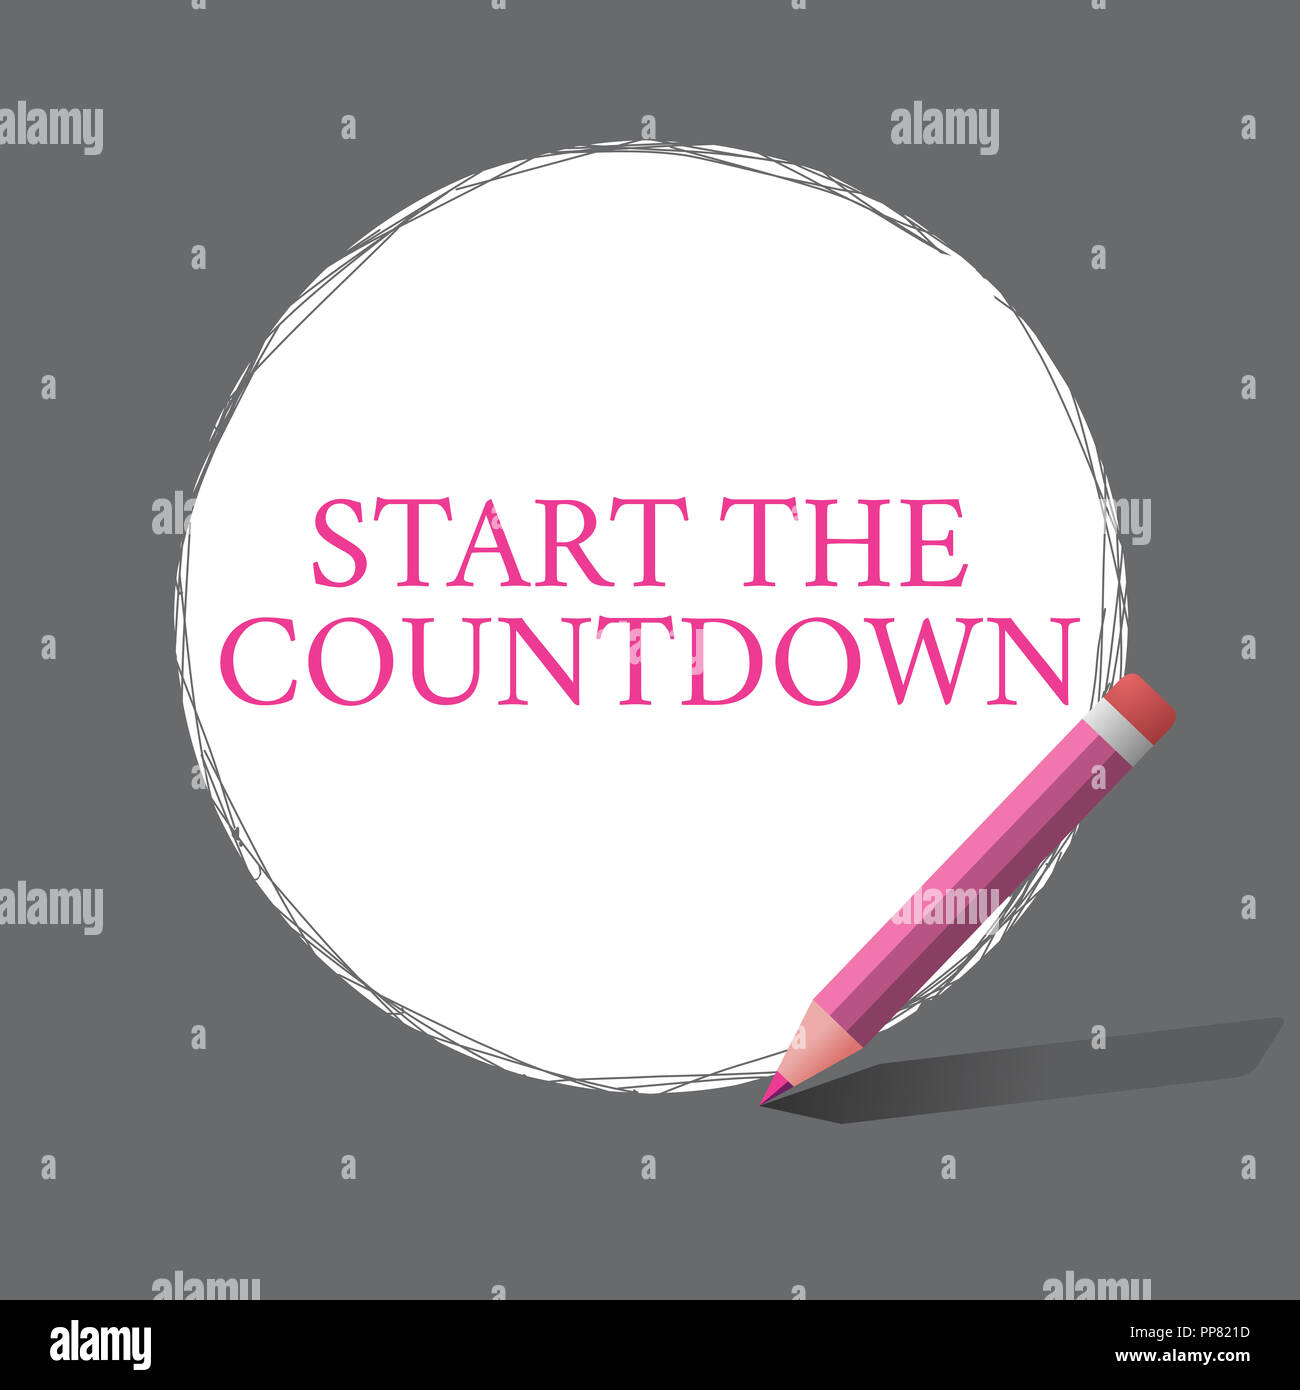 Handschrift Text schreiben den Countdown starten. Begriff Sinne Folge von Rückwärts  Zählen der Timer eingestellt Stockfotografie - Alamy